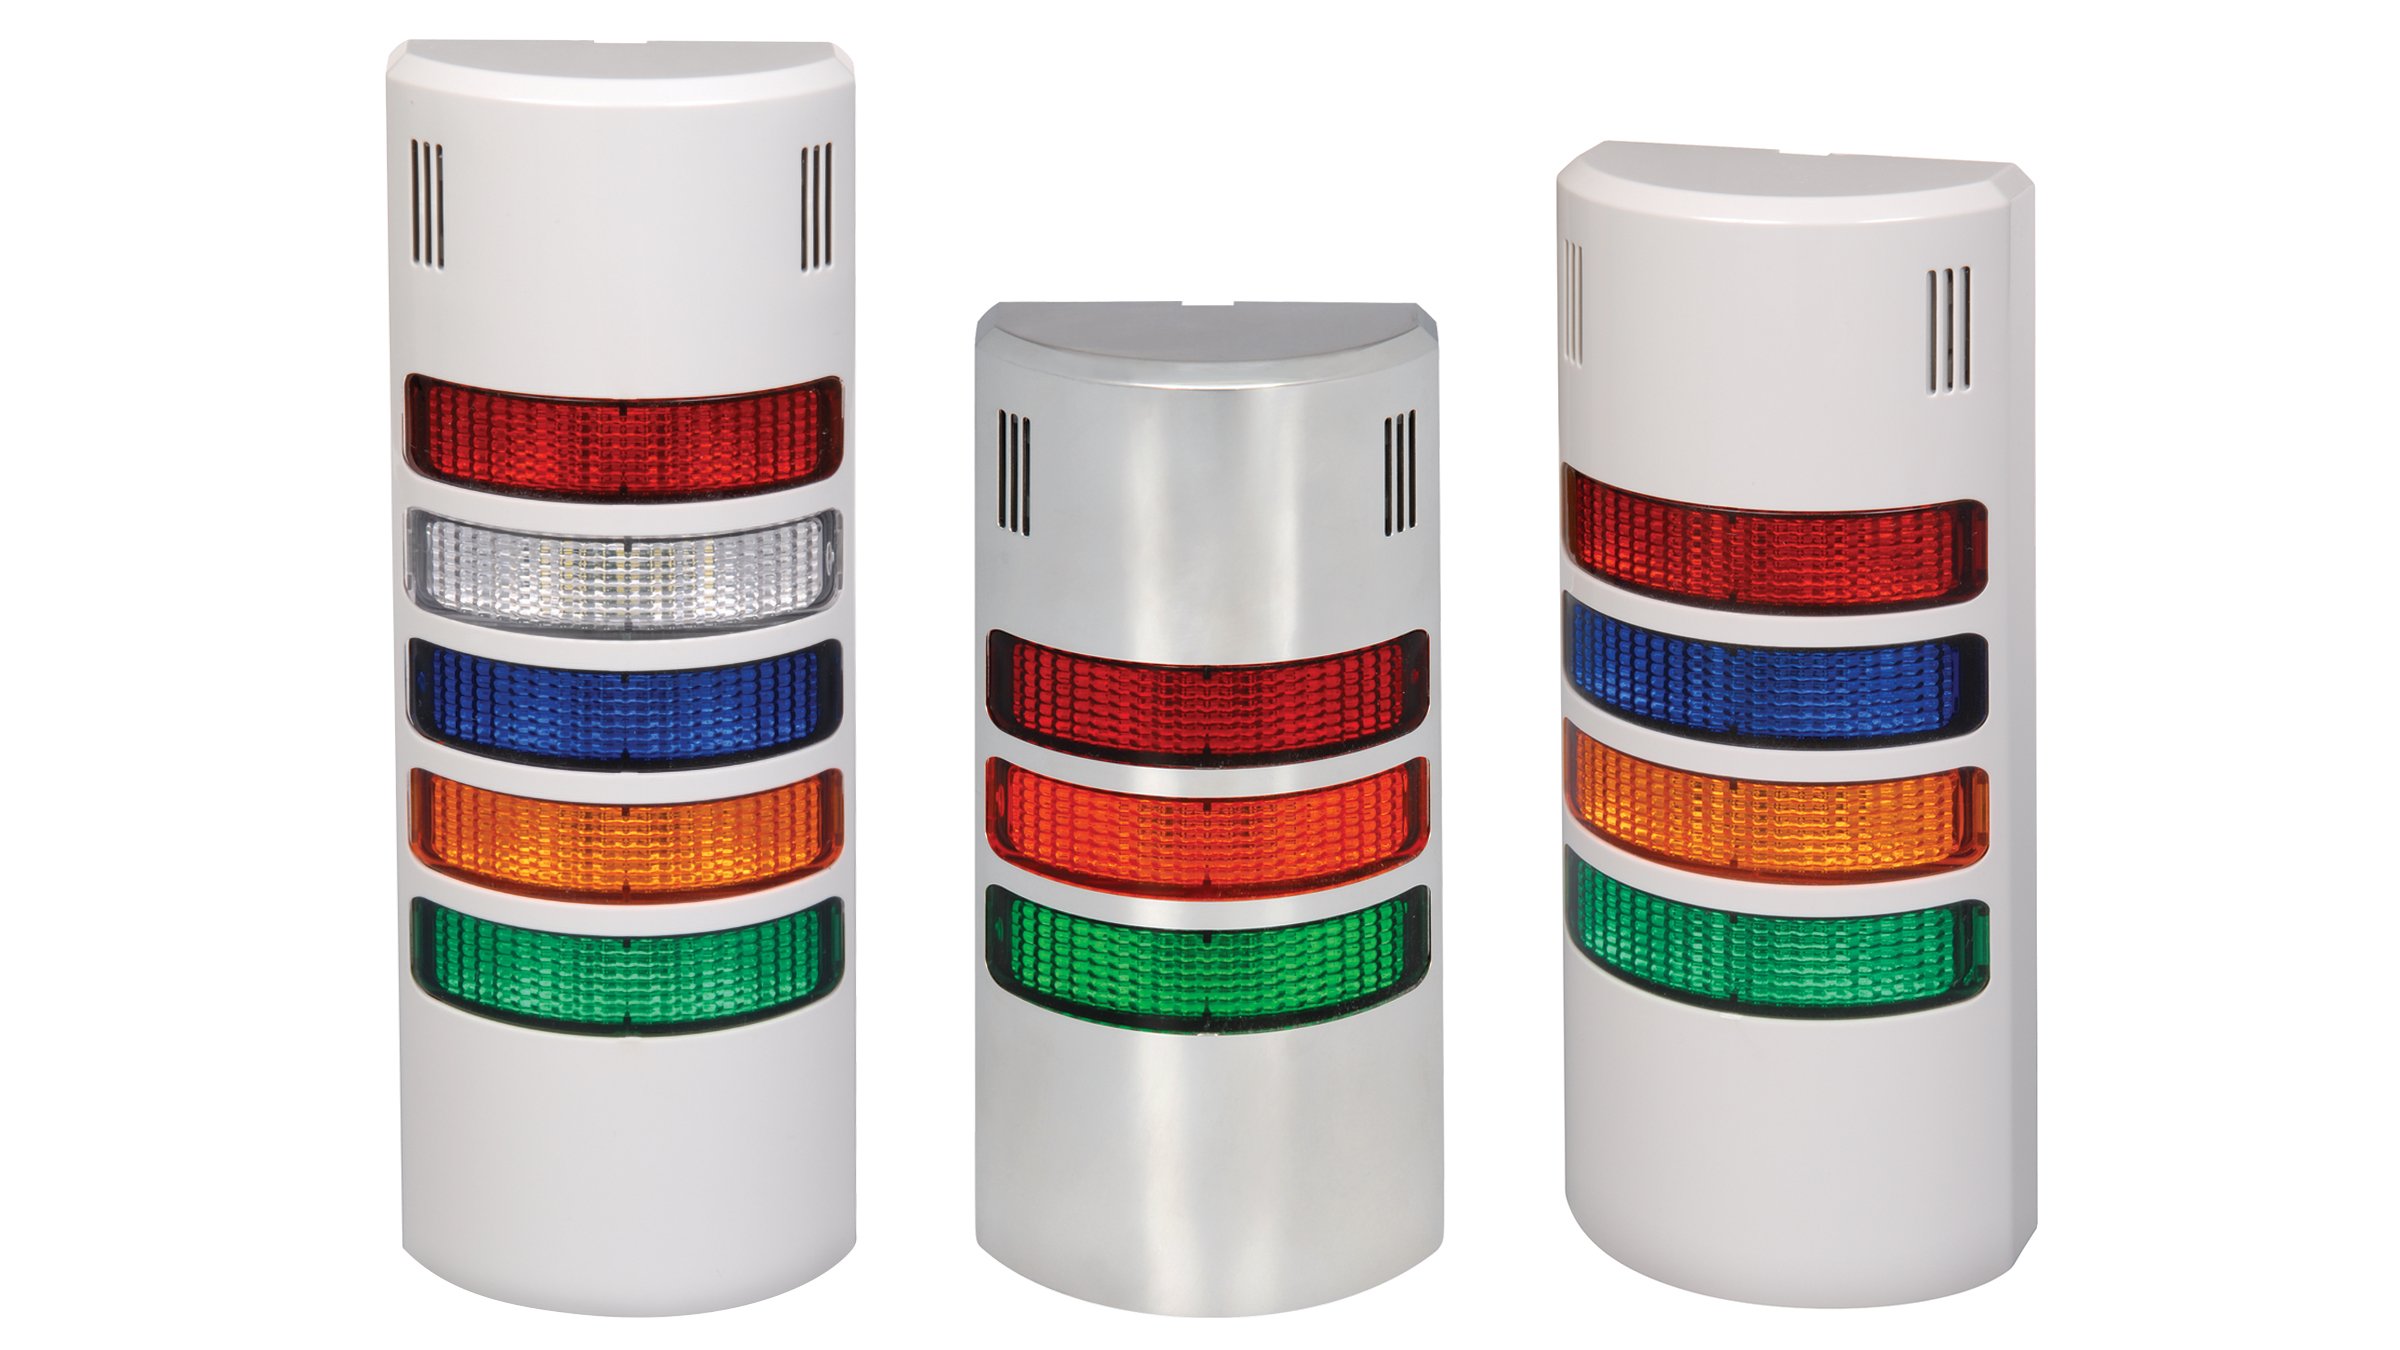 tres versiones de las luces de señales de montaje en pared 855; una con luces rojas/blancas/azules/naranja/verdes; una con luces rojas/naranja/verdes; una con luces rojas/azules/naranja/verdes